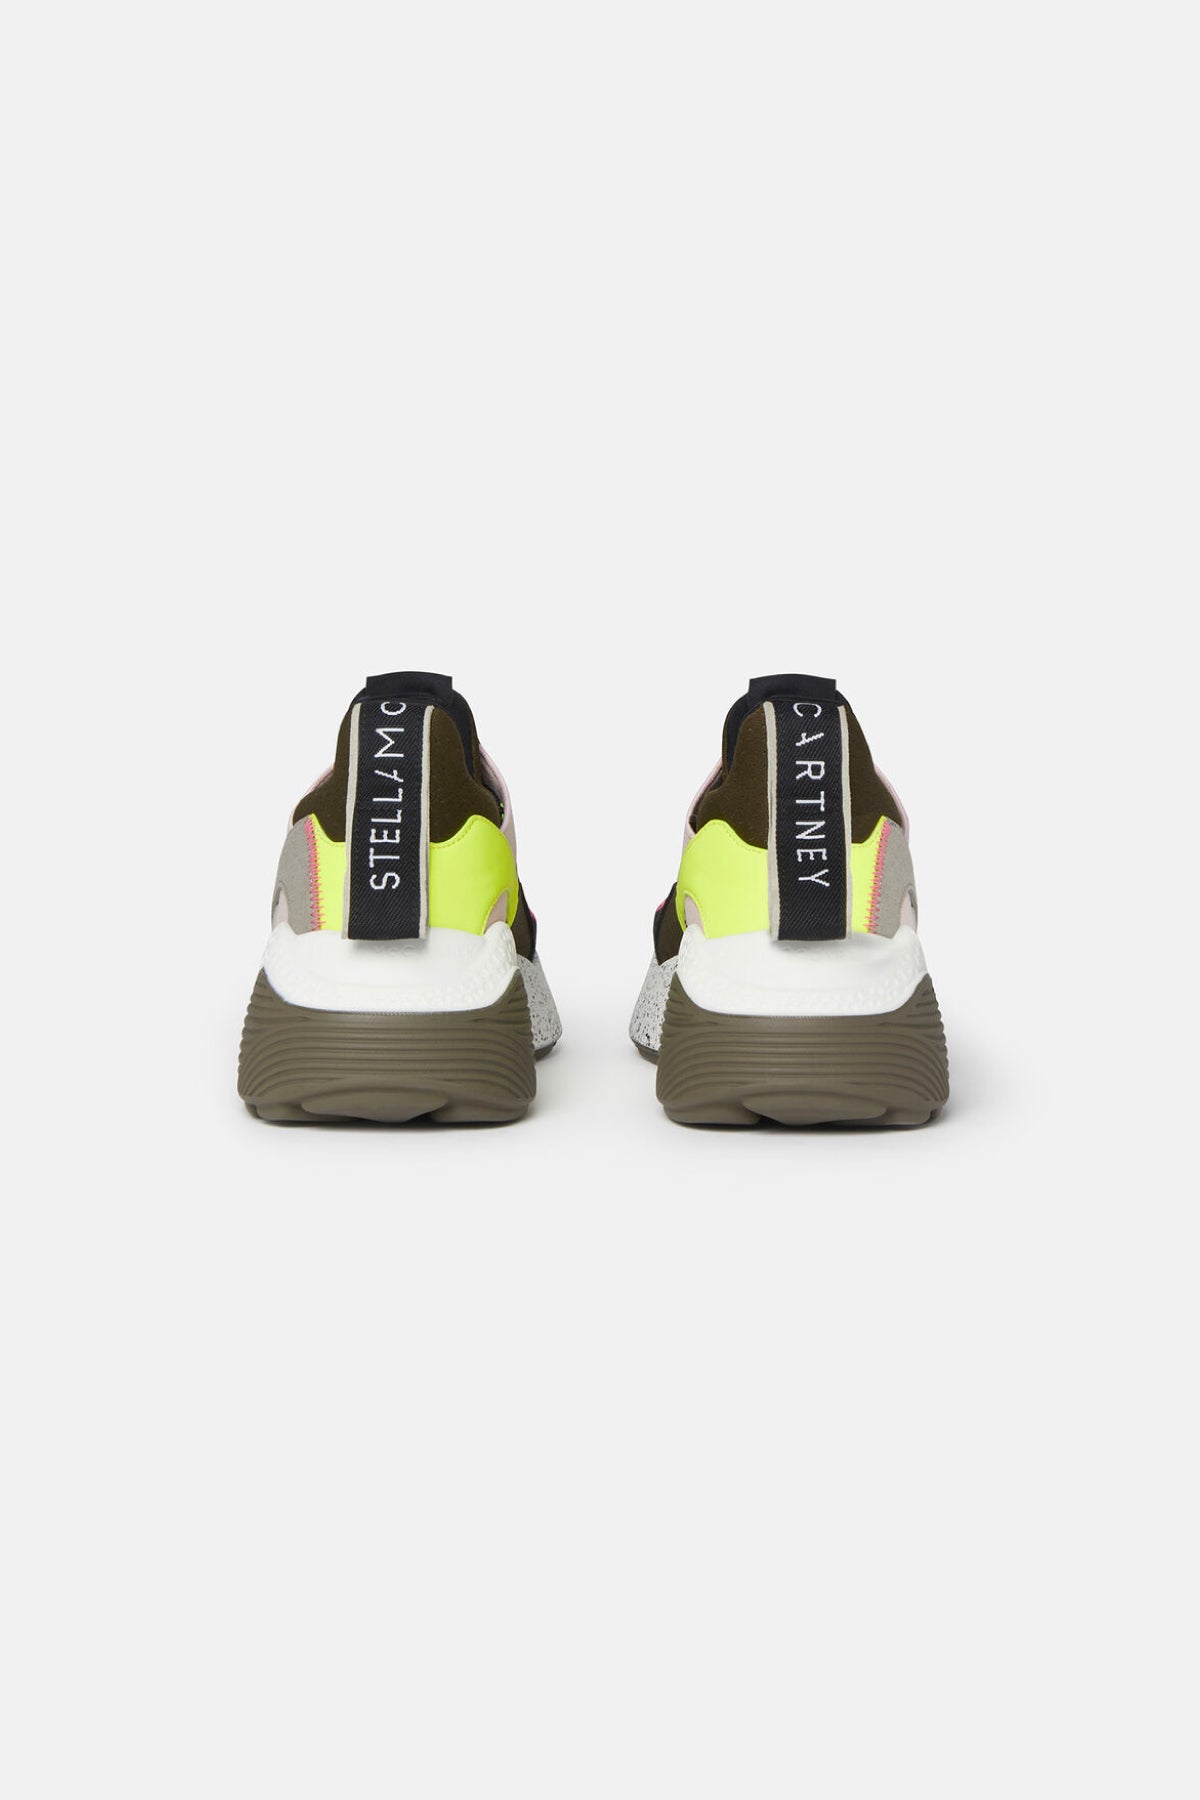 Stella McCartney Eclypse Alter Suede Sneaker - Multi Neon Yellow